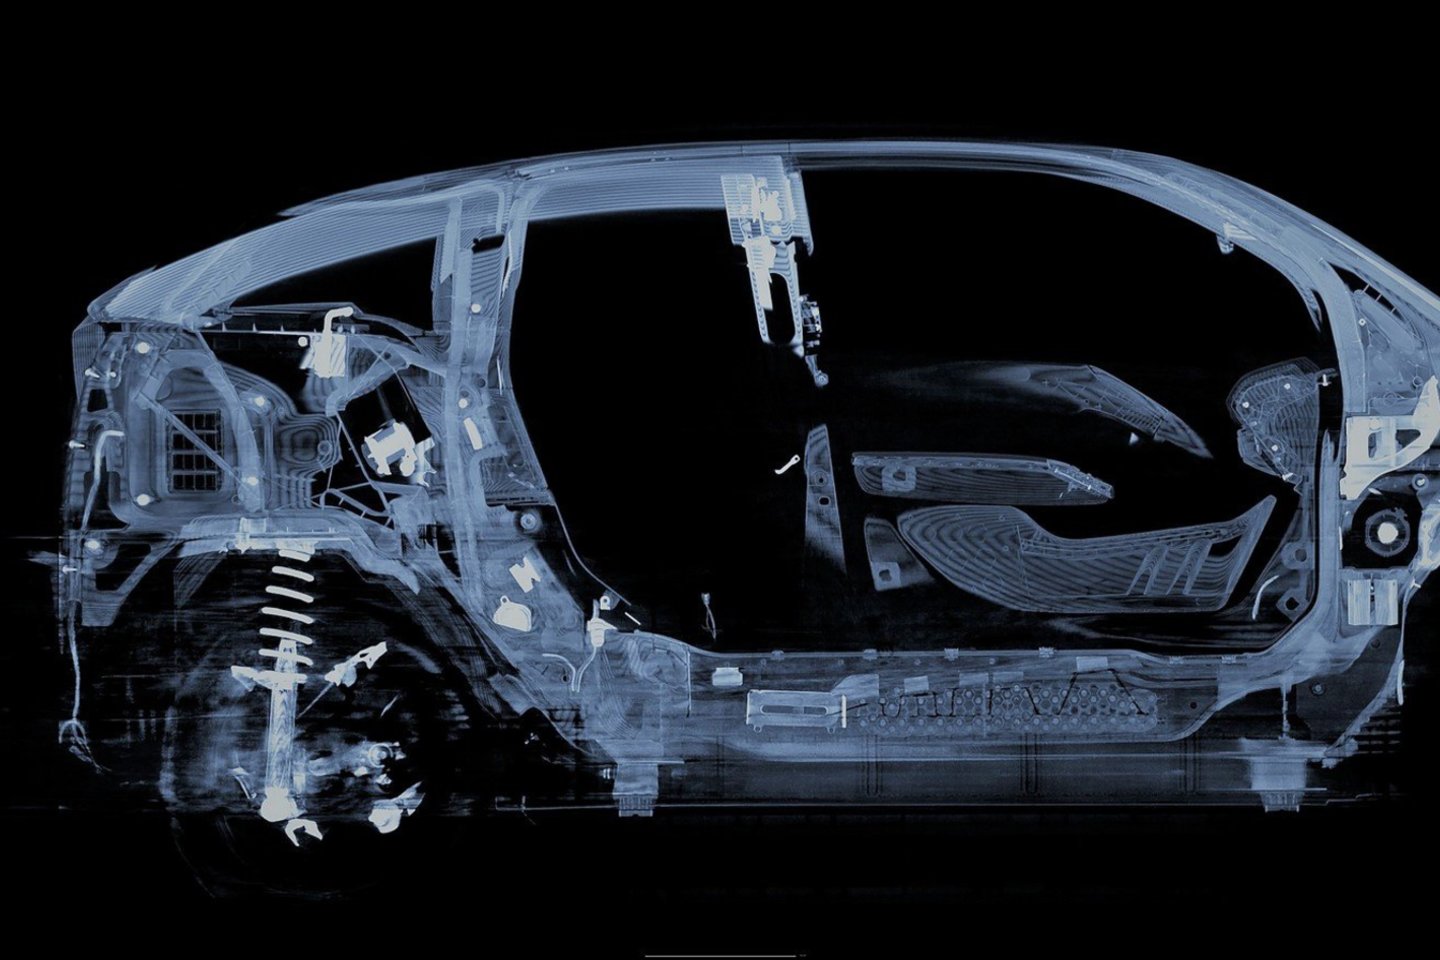  BMW atstovai įsitikinę, kad toks kompiuterinės tomografijosturės didžiulę įtaką technologijų diegimo greičiui.<br> Gamintojo nuotr.